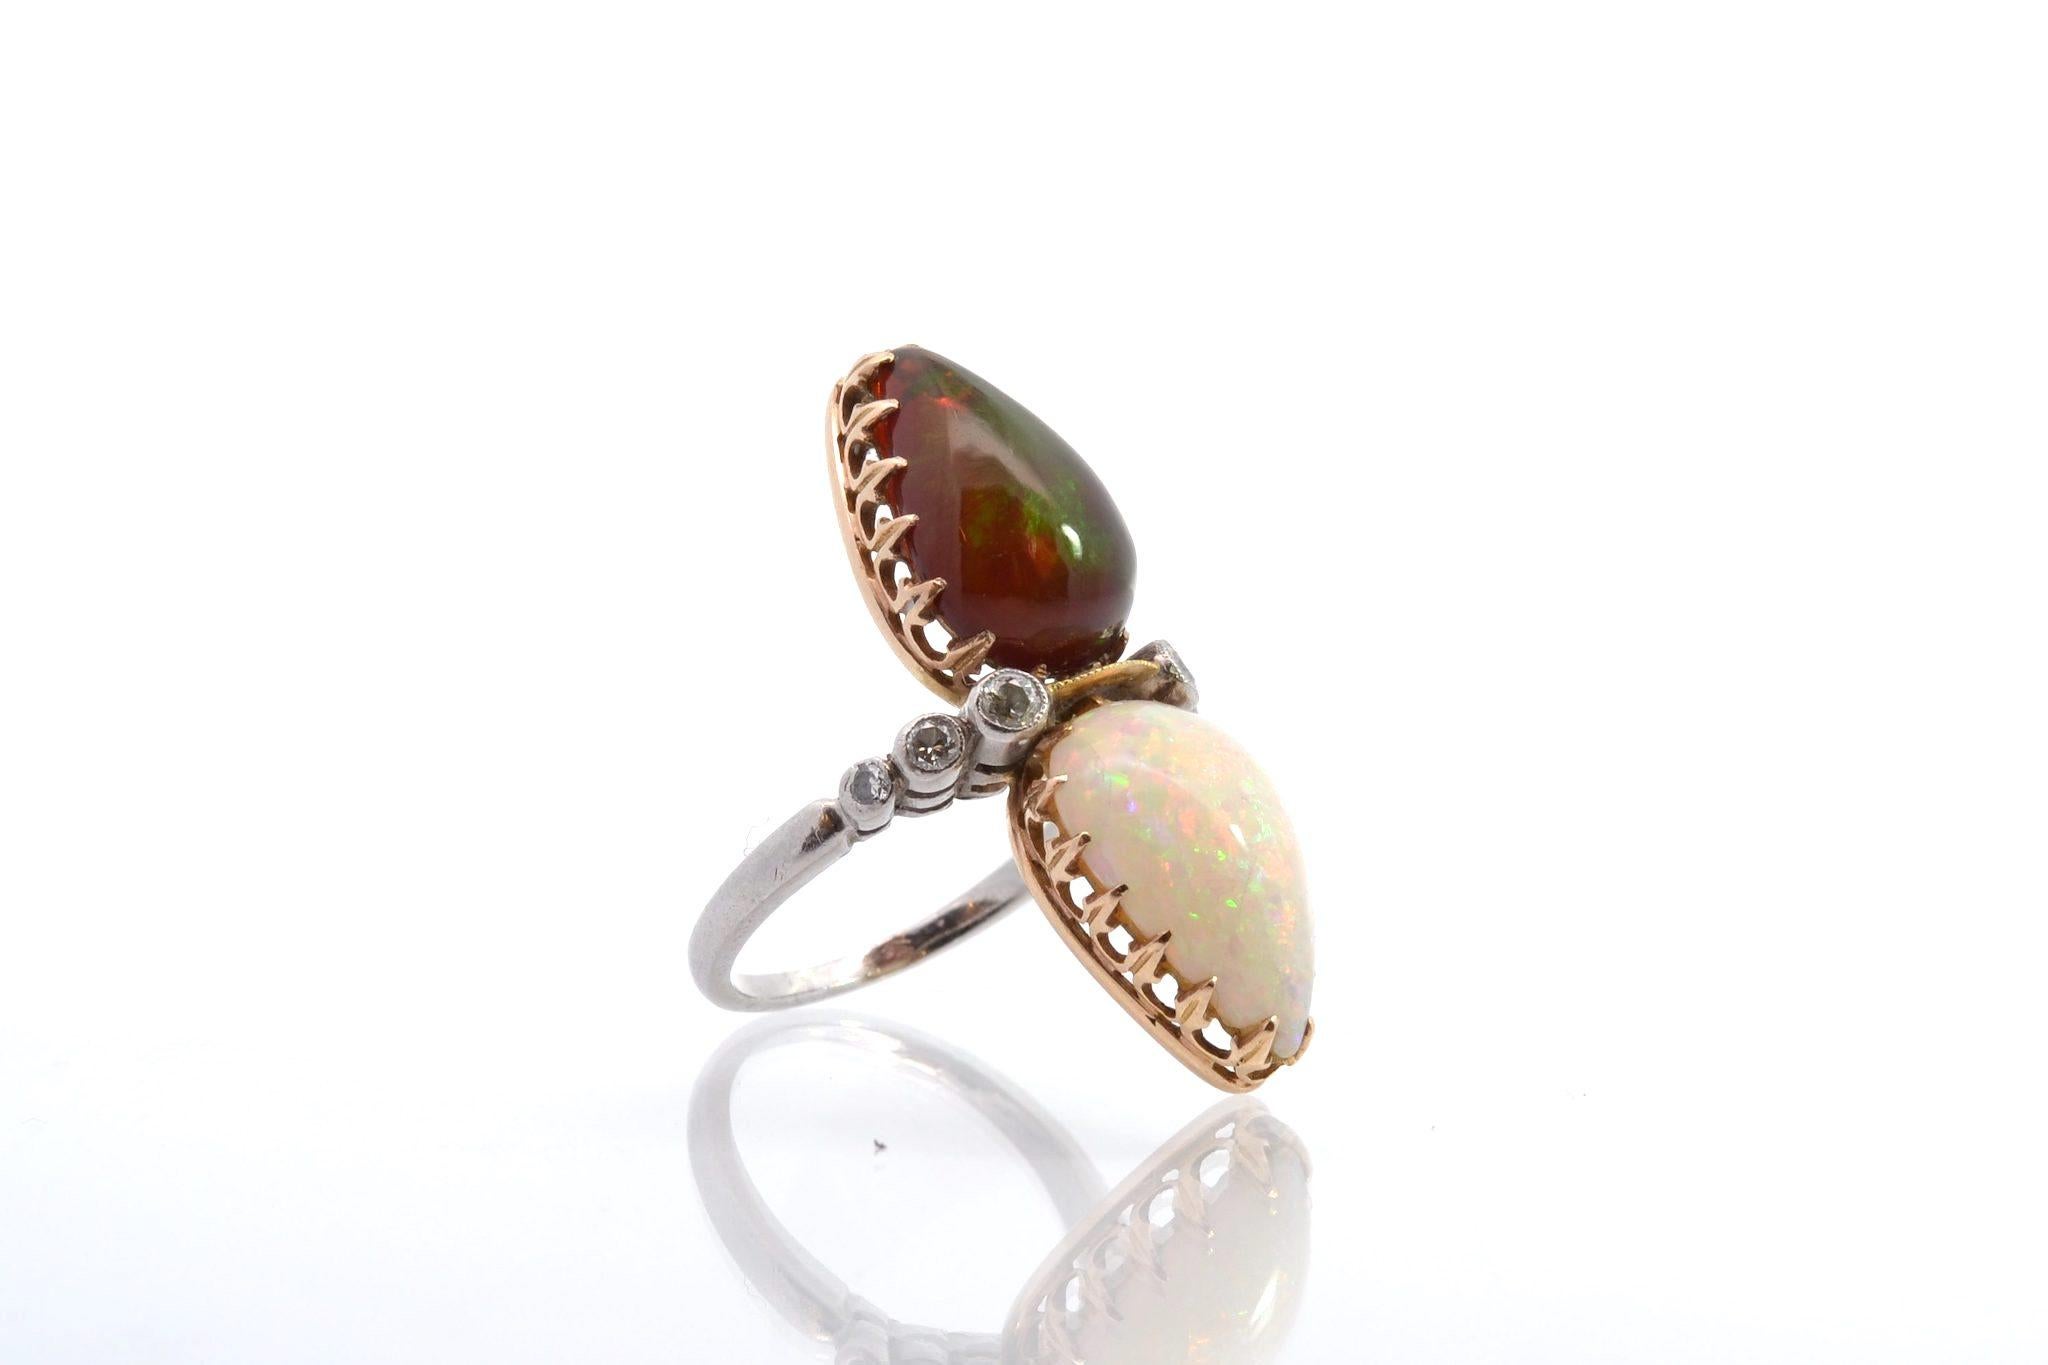 Edelsteine: Opale und Diamanten im Altschliff
mit einem Gesamtgewicht von 0,18 Karat.
MATERIAL: 18k Gelbgold und Platin
Abmessungen: 3.4 cm Länge am Finger
Gewicht: 7,6 g
Größe: 52 (freie Größenwahl)
Zertifikat
Ref. : 24799